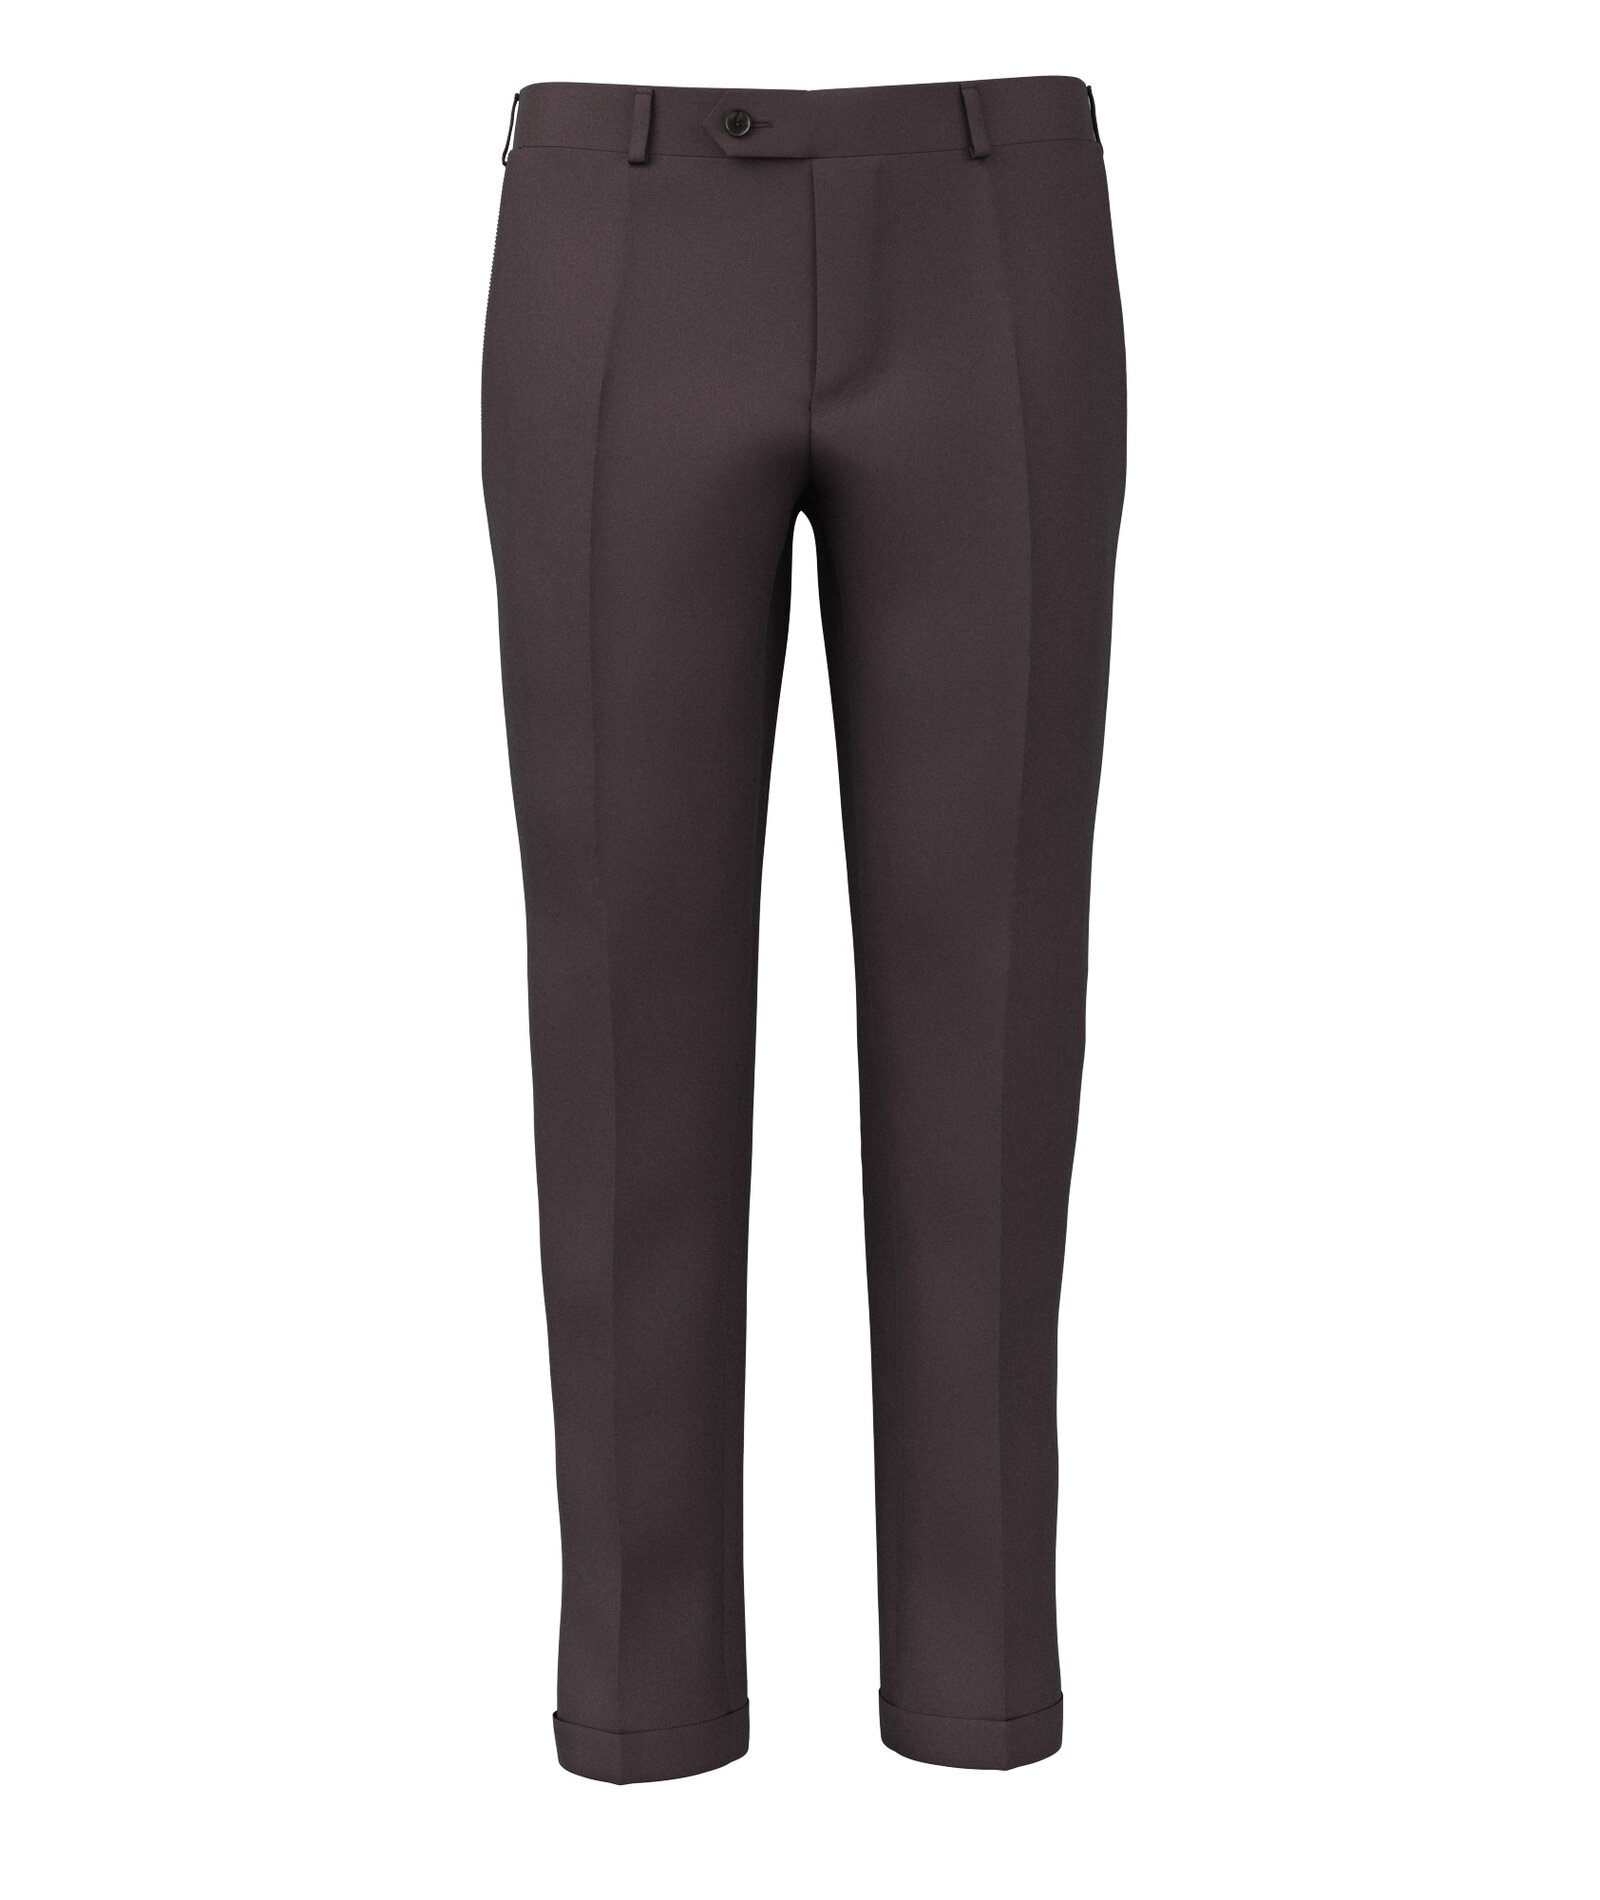 Image of Pantaloni da uomo su misura, Lanificio Zignone, Viola in Twill di Lana, Quattro Stagioni | Lanieri